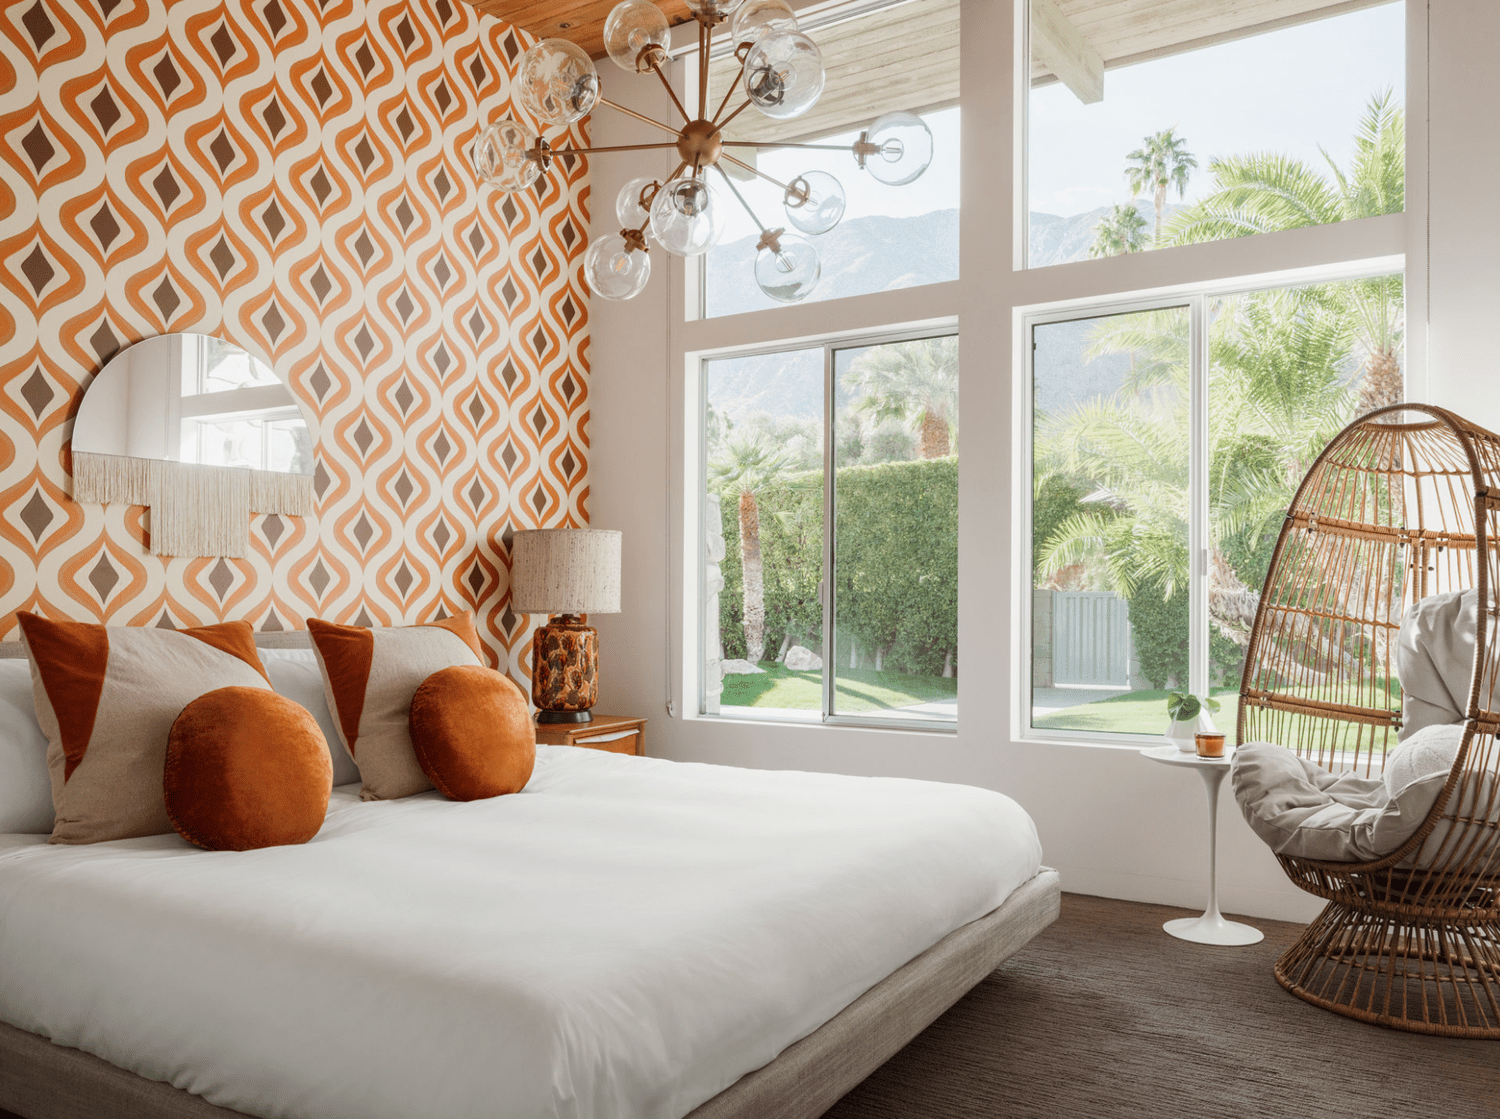 Un dormitorio Art Decó contemporáneo con papel pintado naranja, cojines naranjas y una lámpara de araña de estrellas